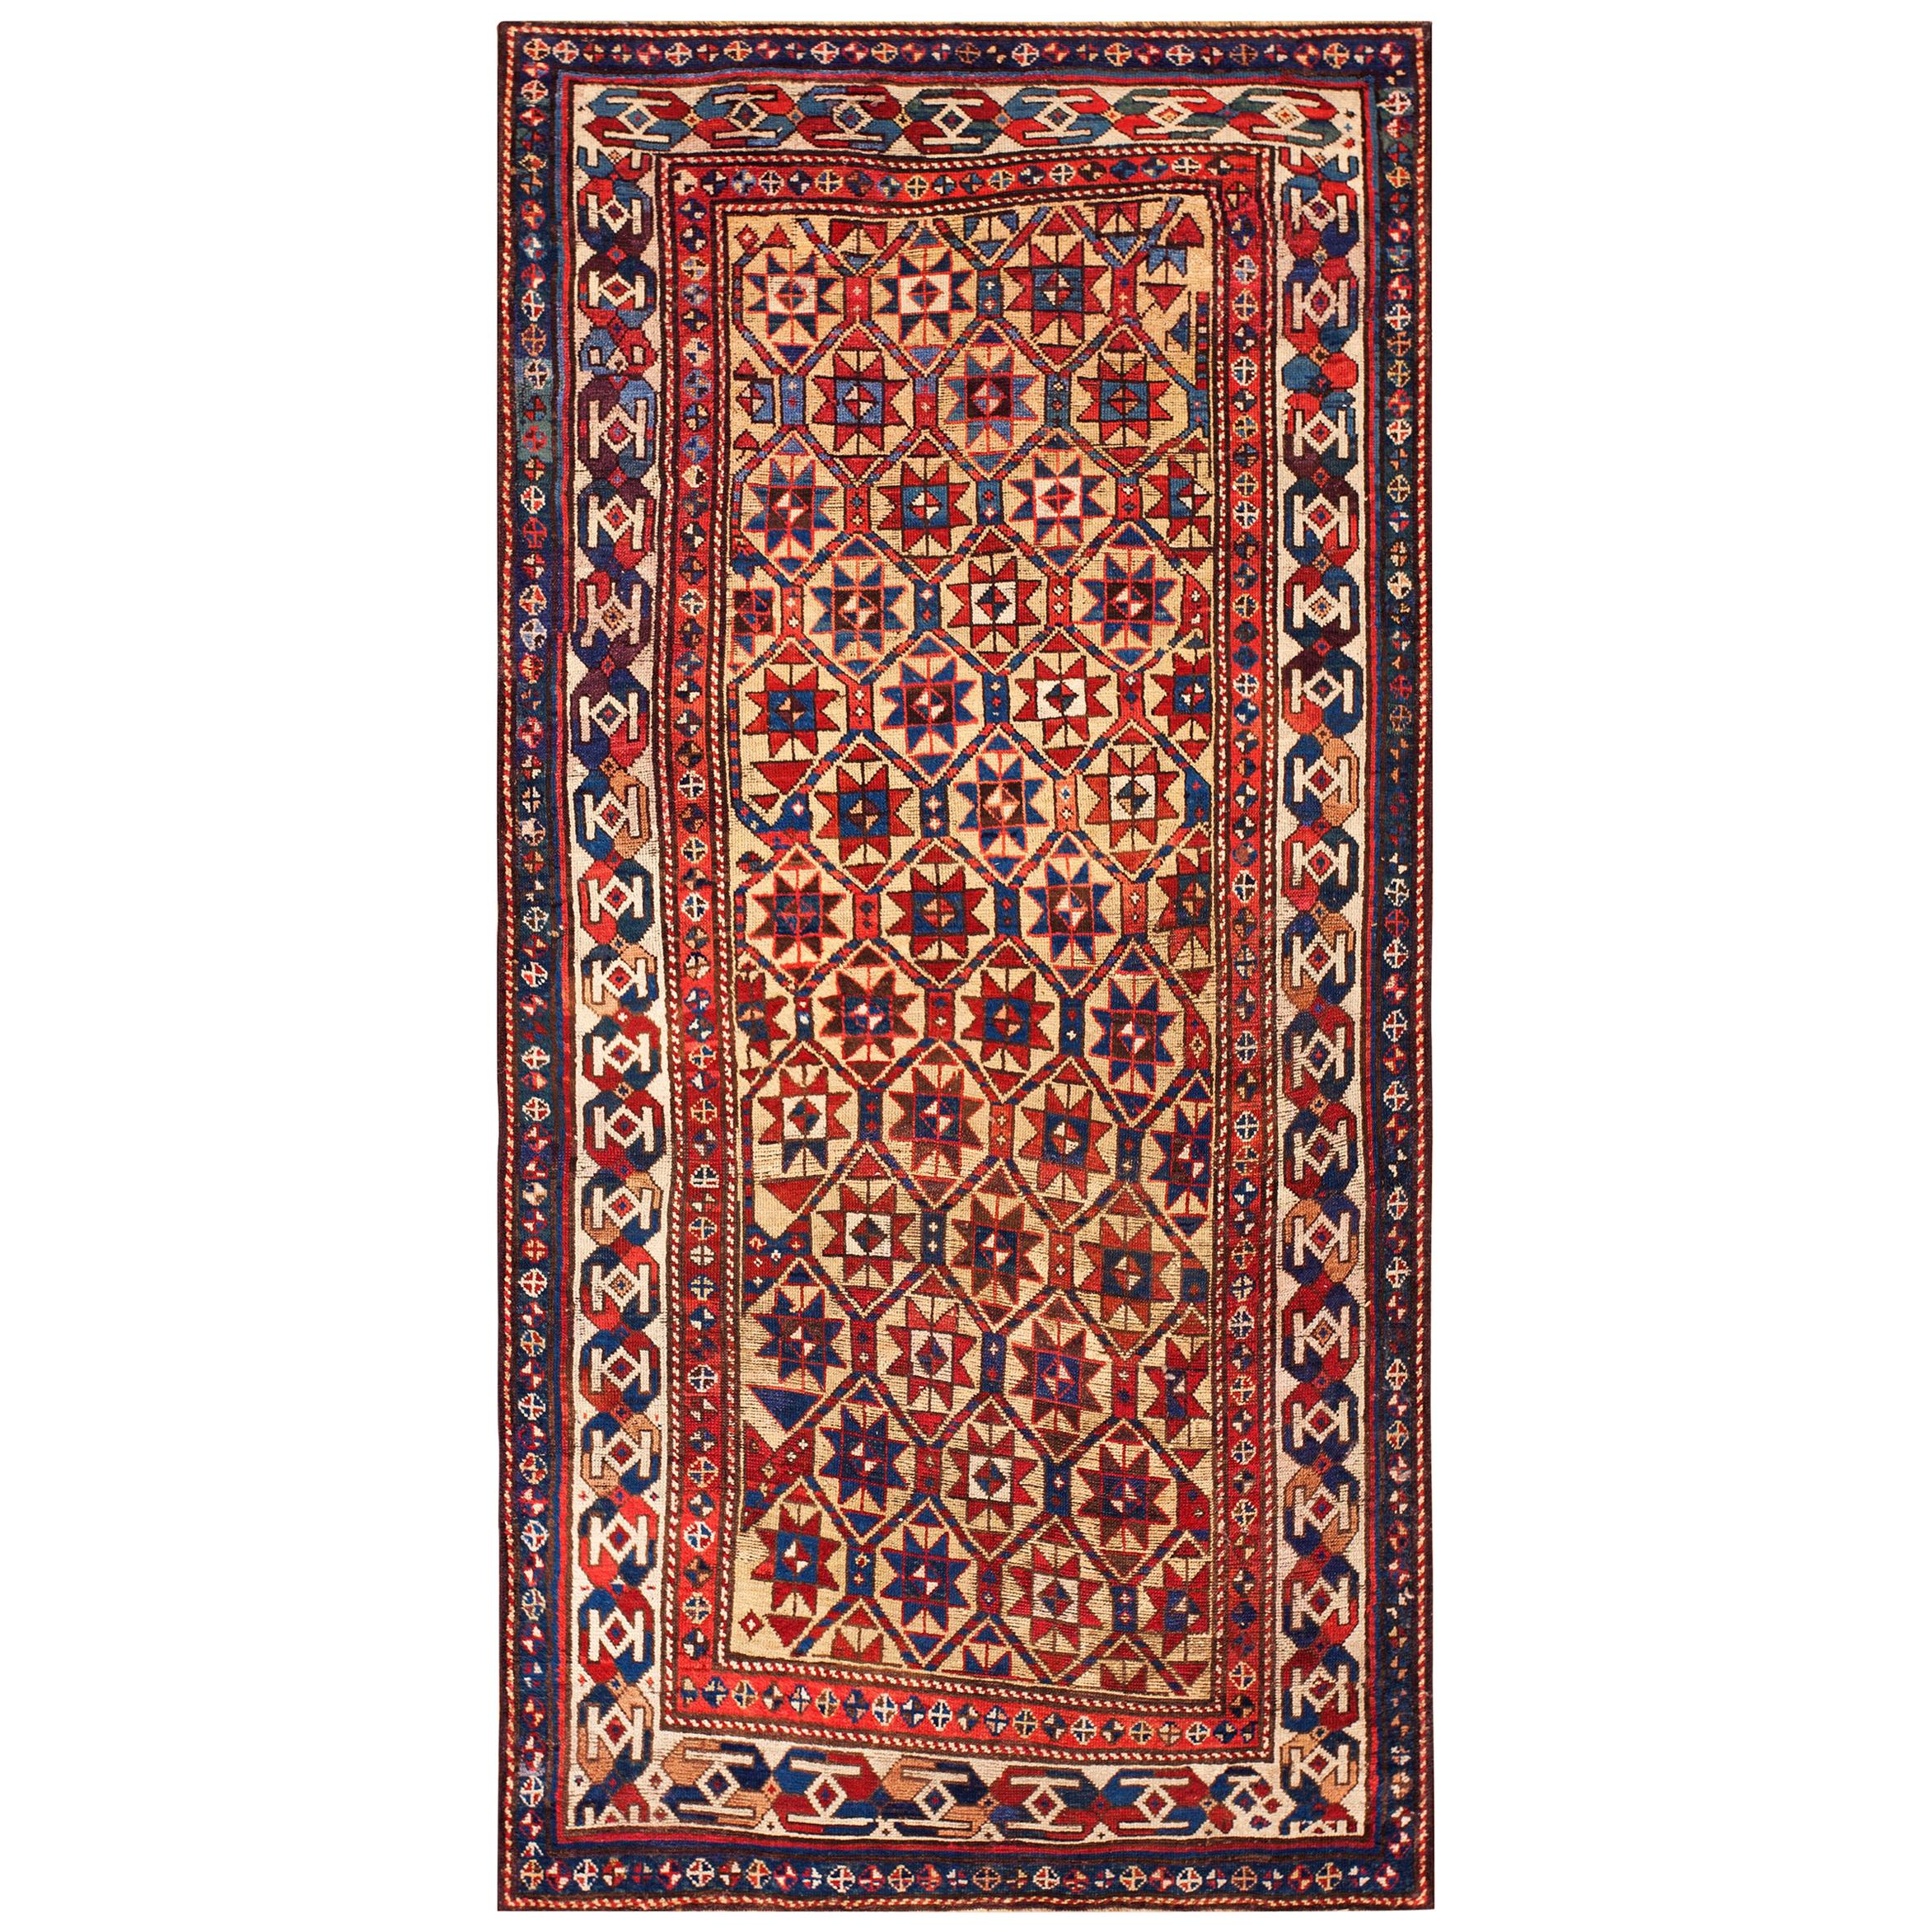 19th Century Caucasian Kazak Carpet ( 3'10" x 8' - 117 x 244 )